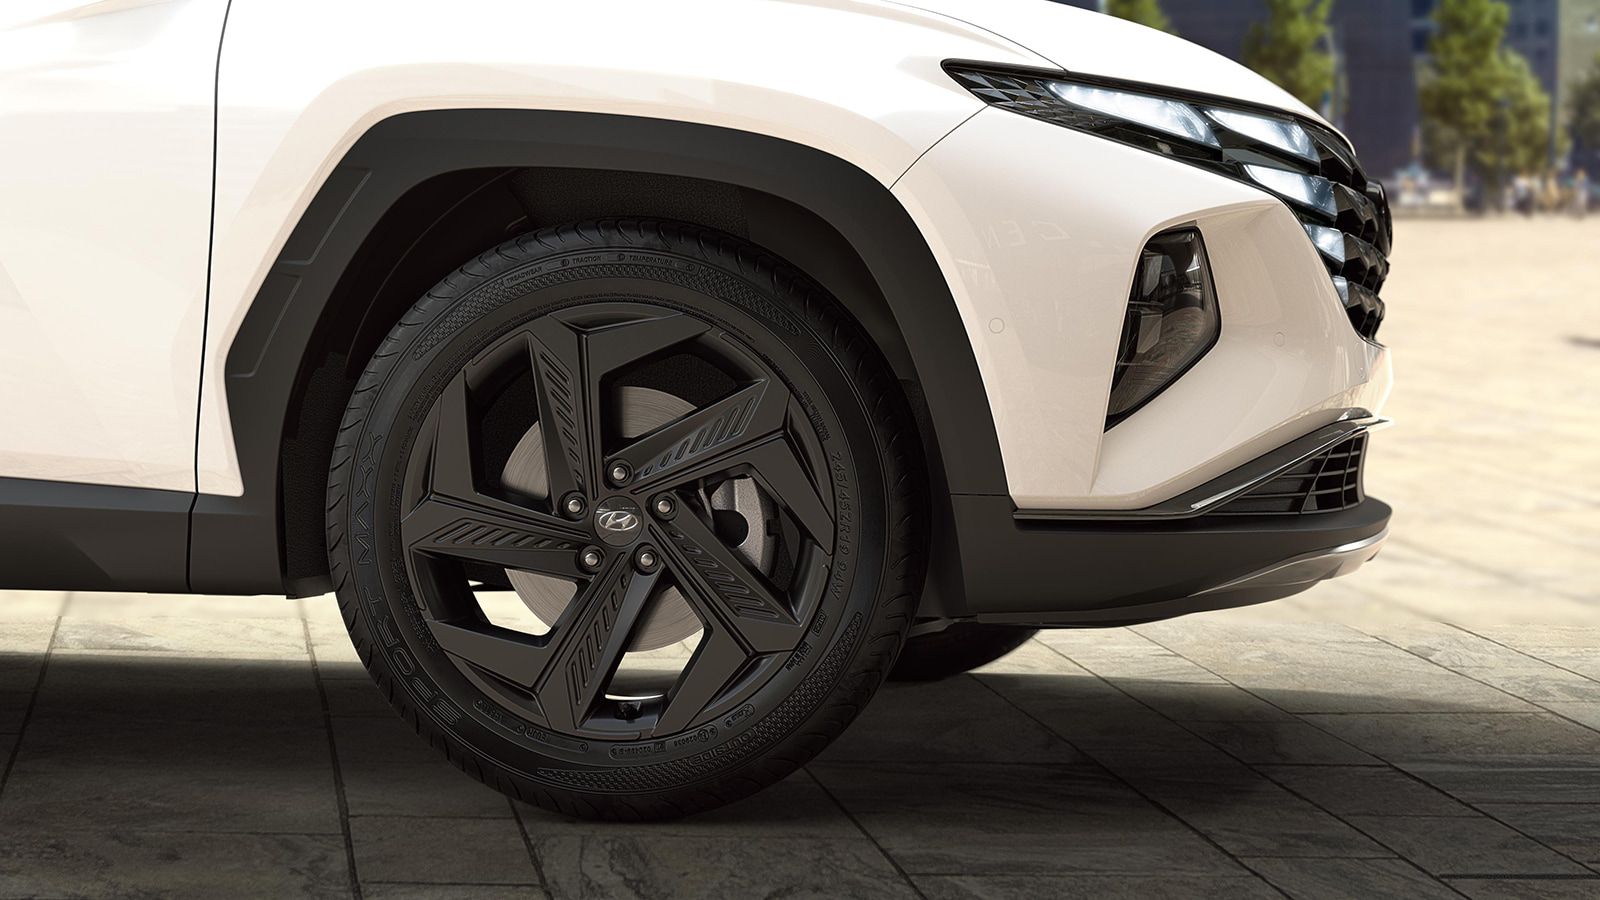 Hyundai TUCSON Plug-in Hybrid in Polar White detail view of the wheels